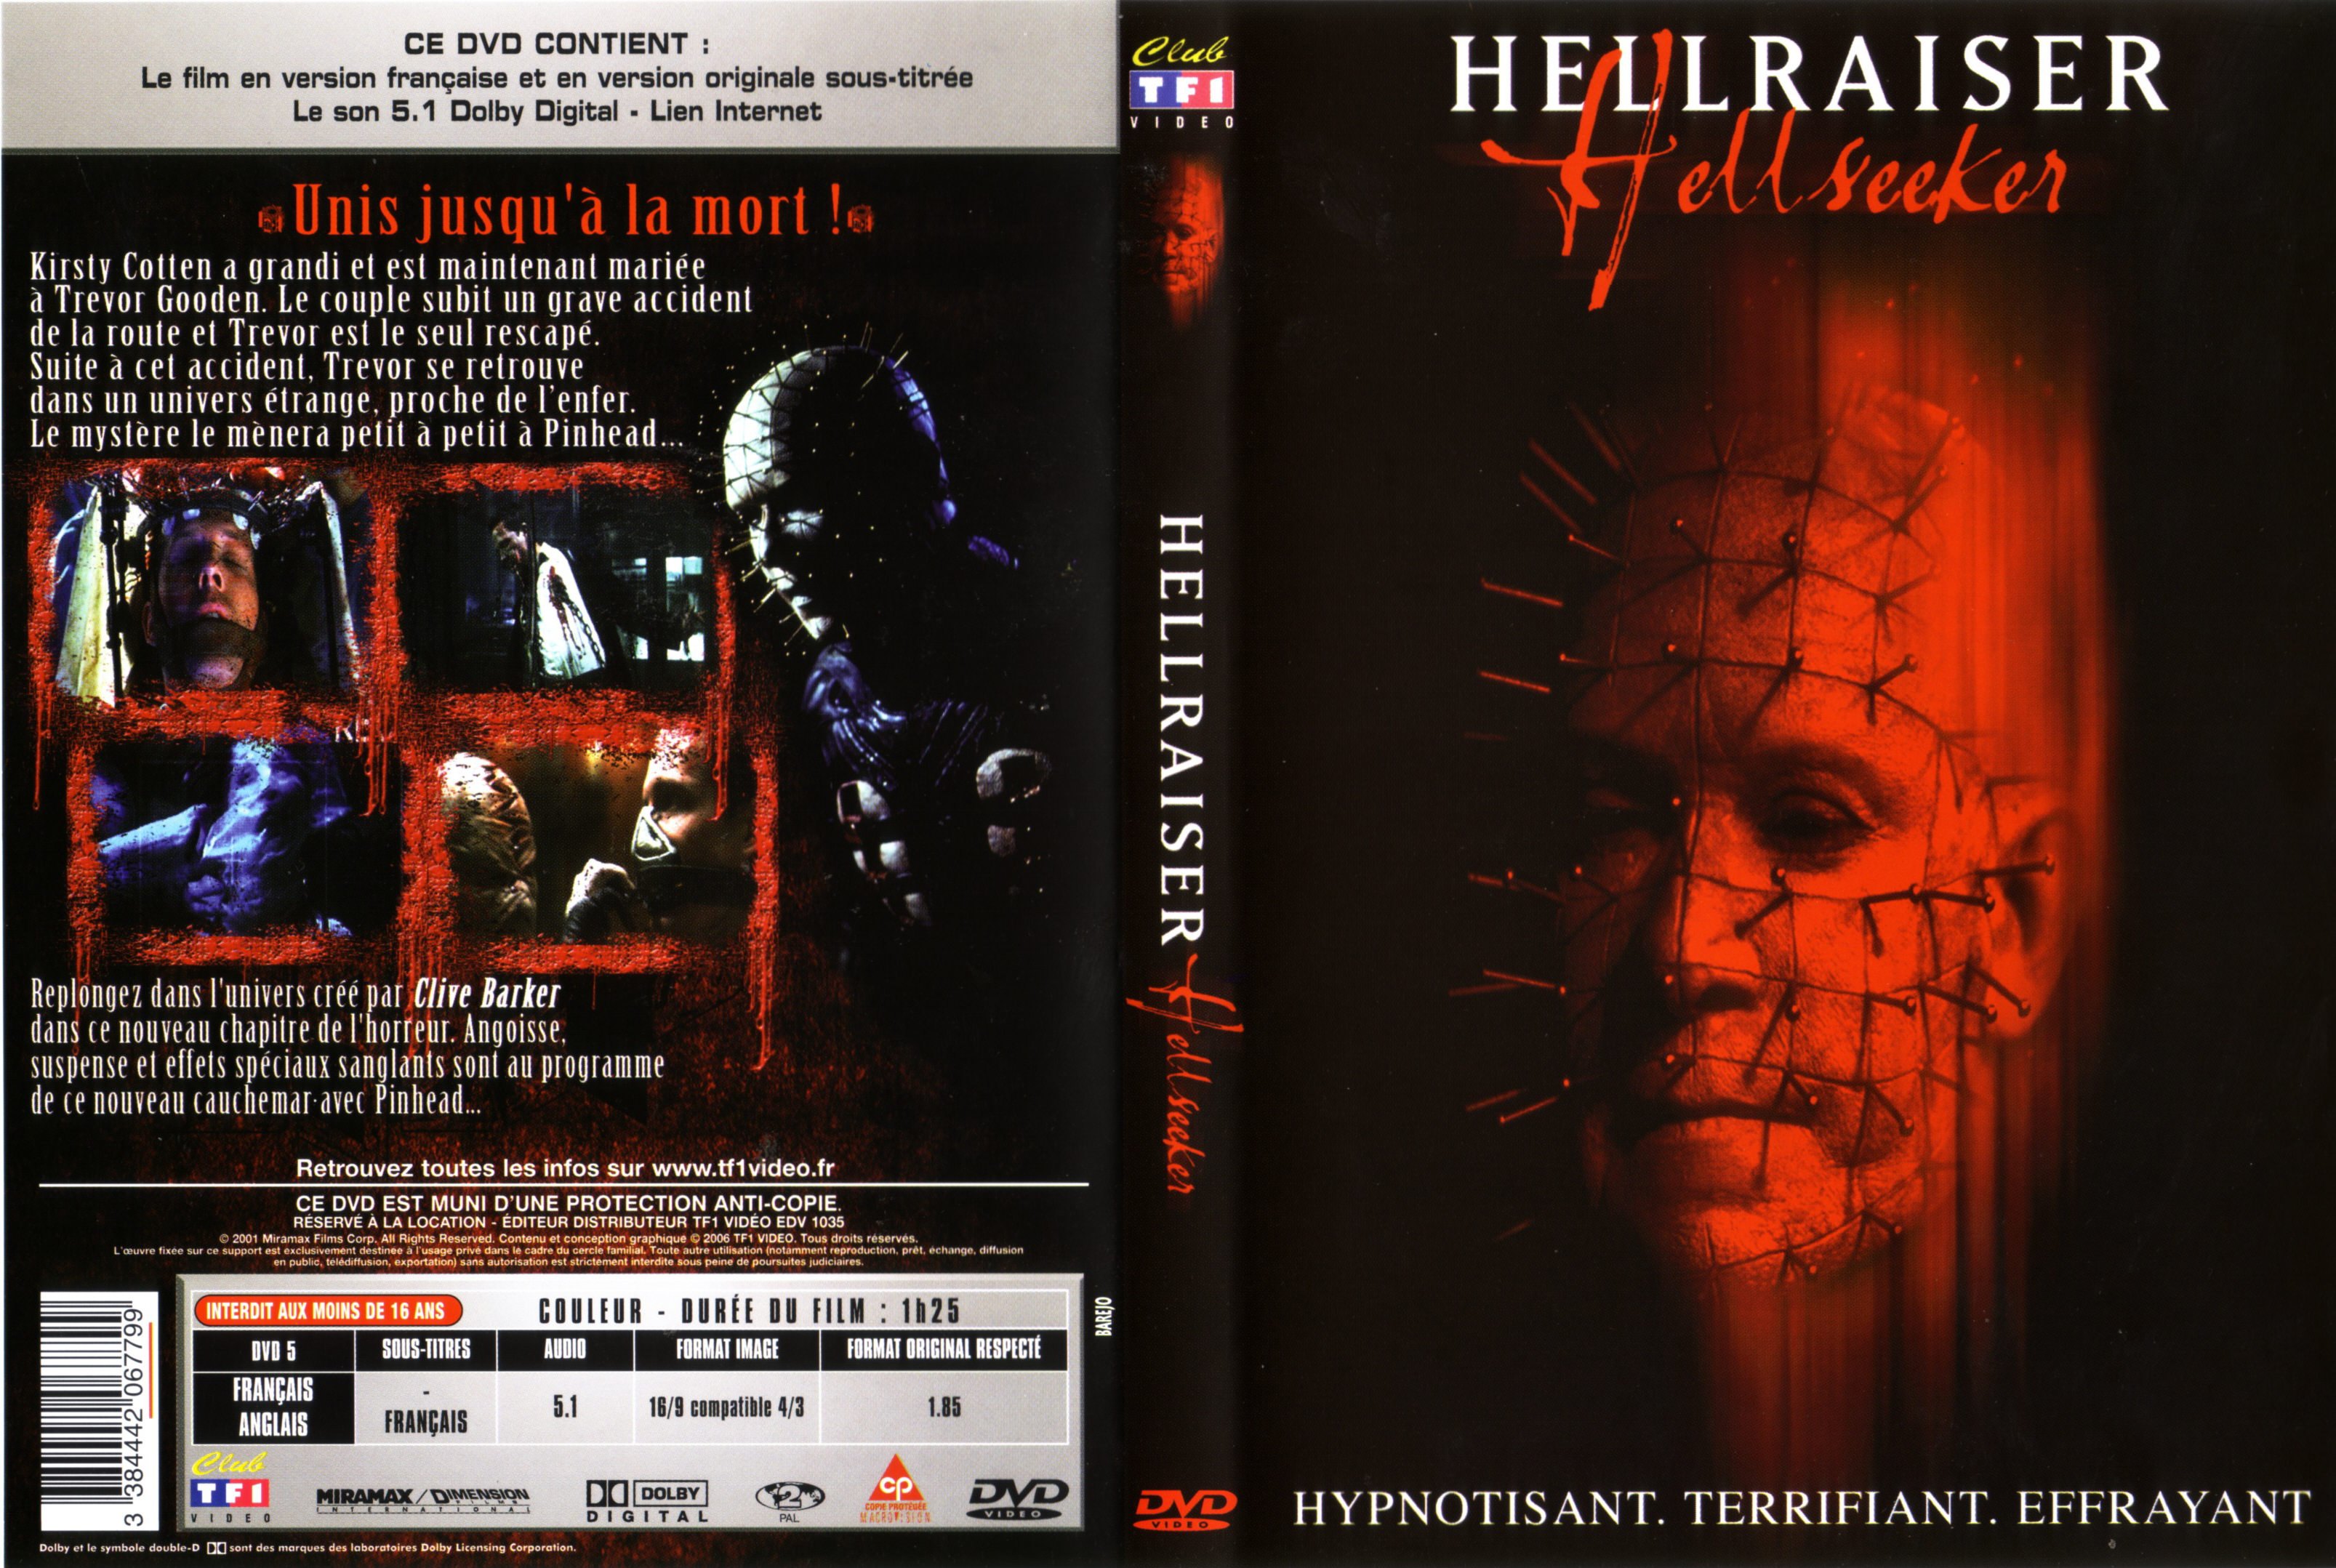 Jaquette DVD Hellraiser Hellseeker